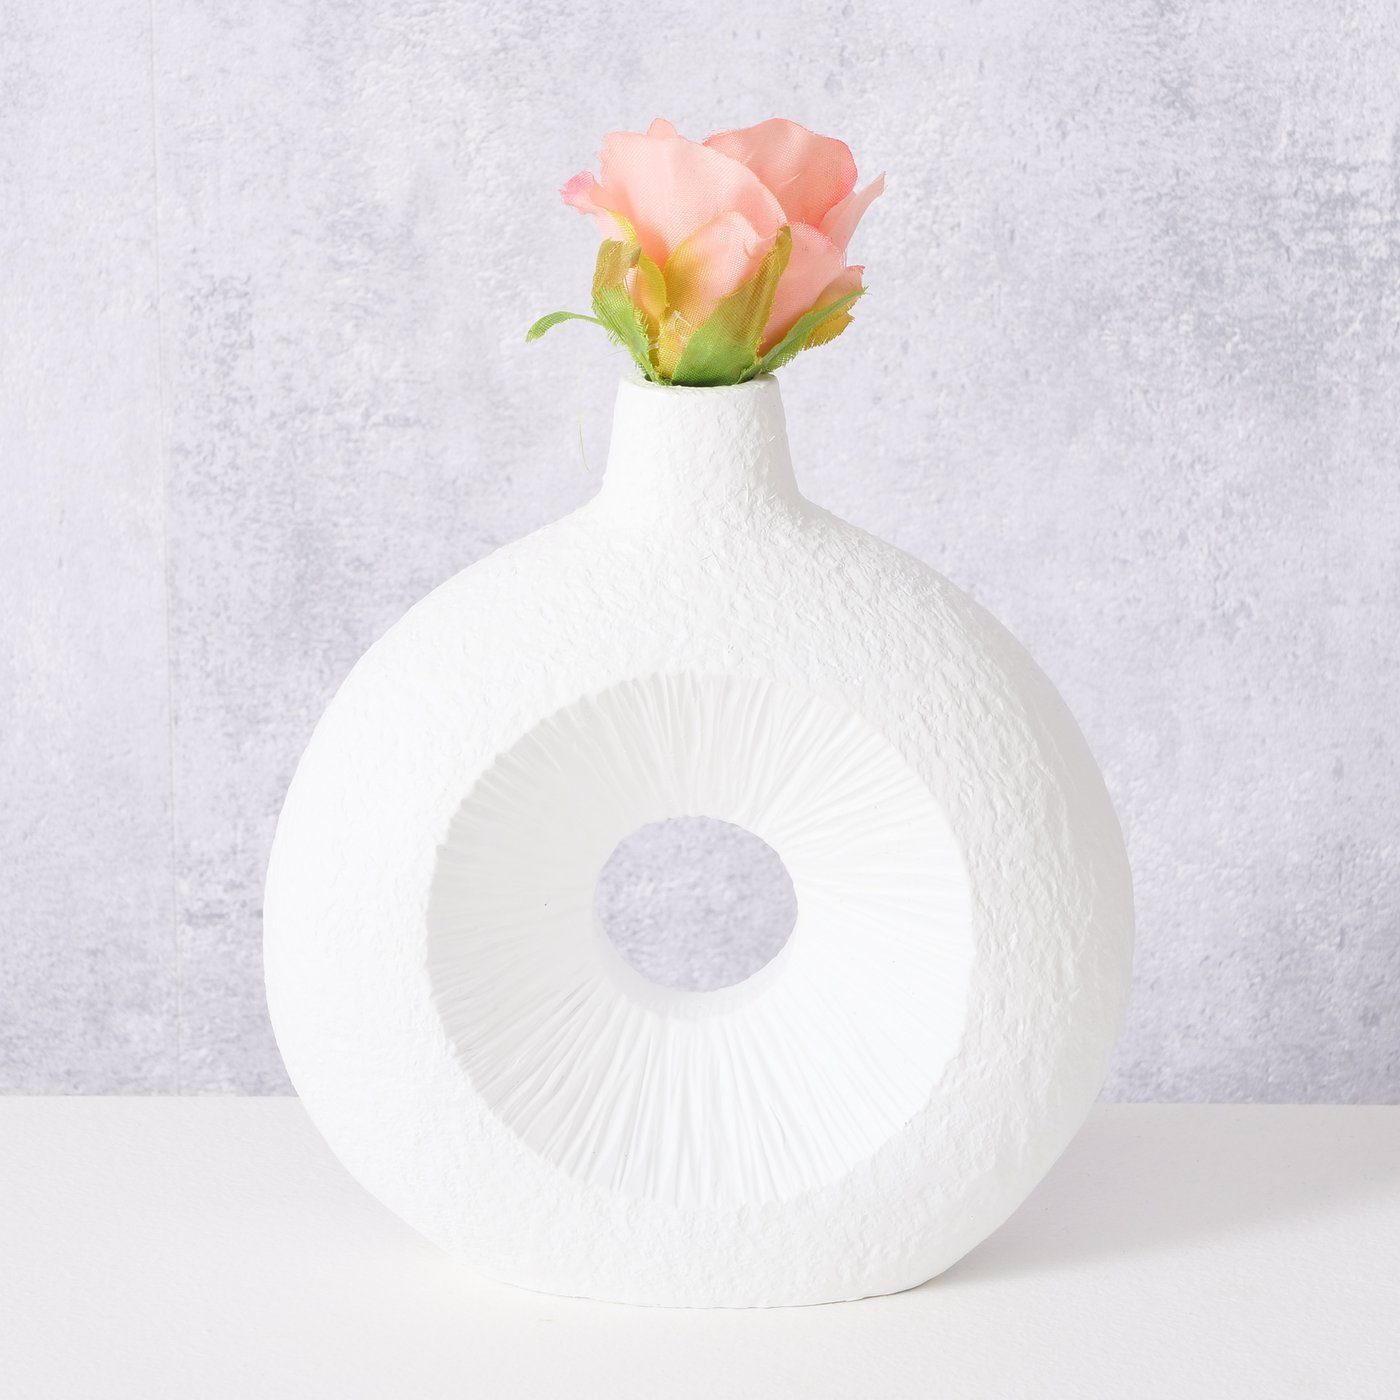 Kunststoff in H19cm, weiß Vase BOLTZE "Lamony" aus Dekovase